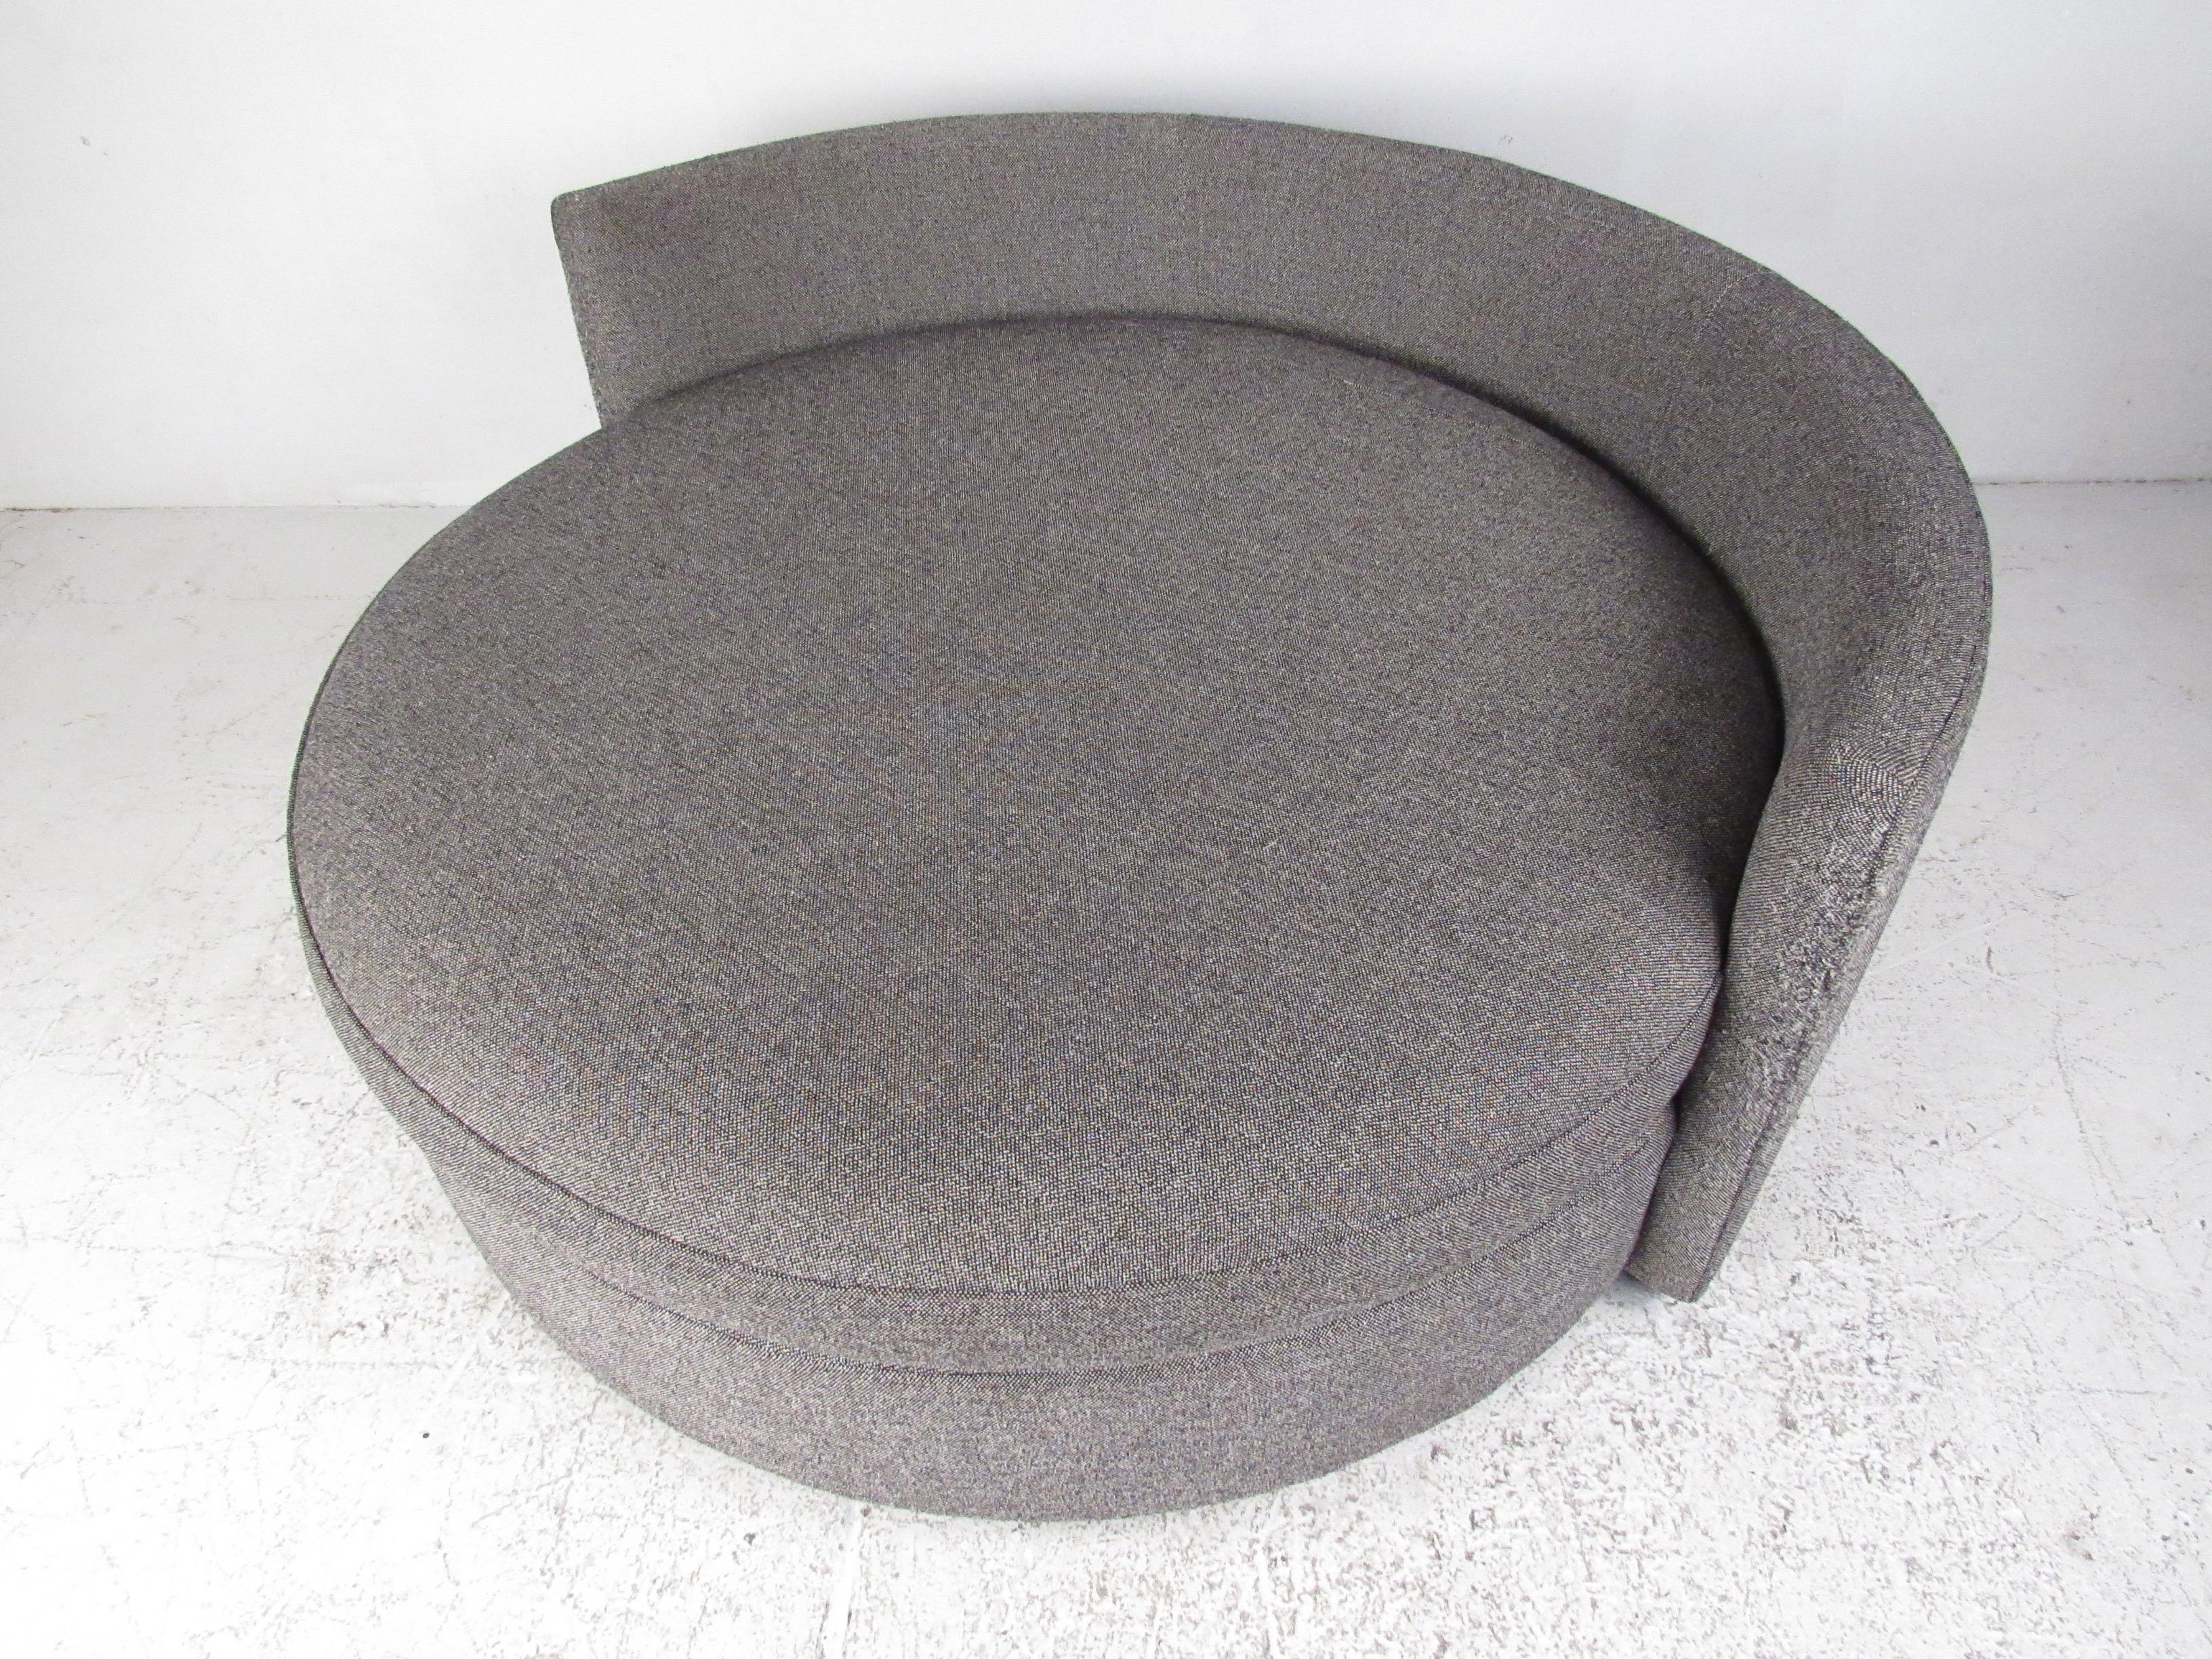 round sofa chair